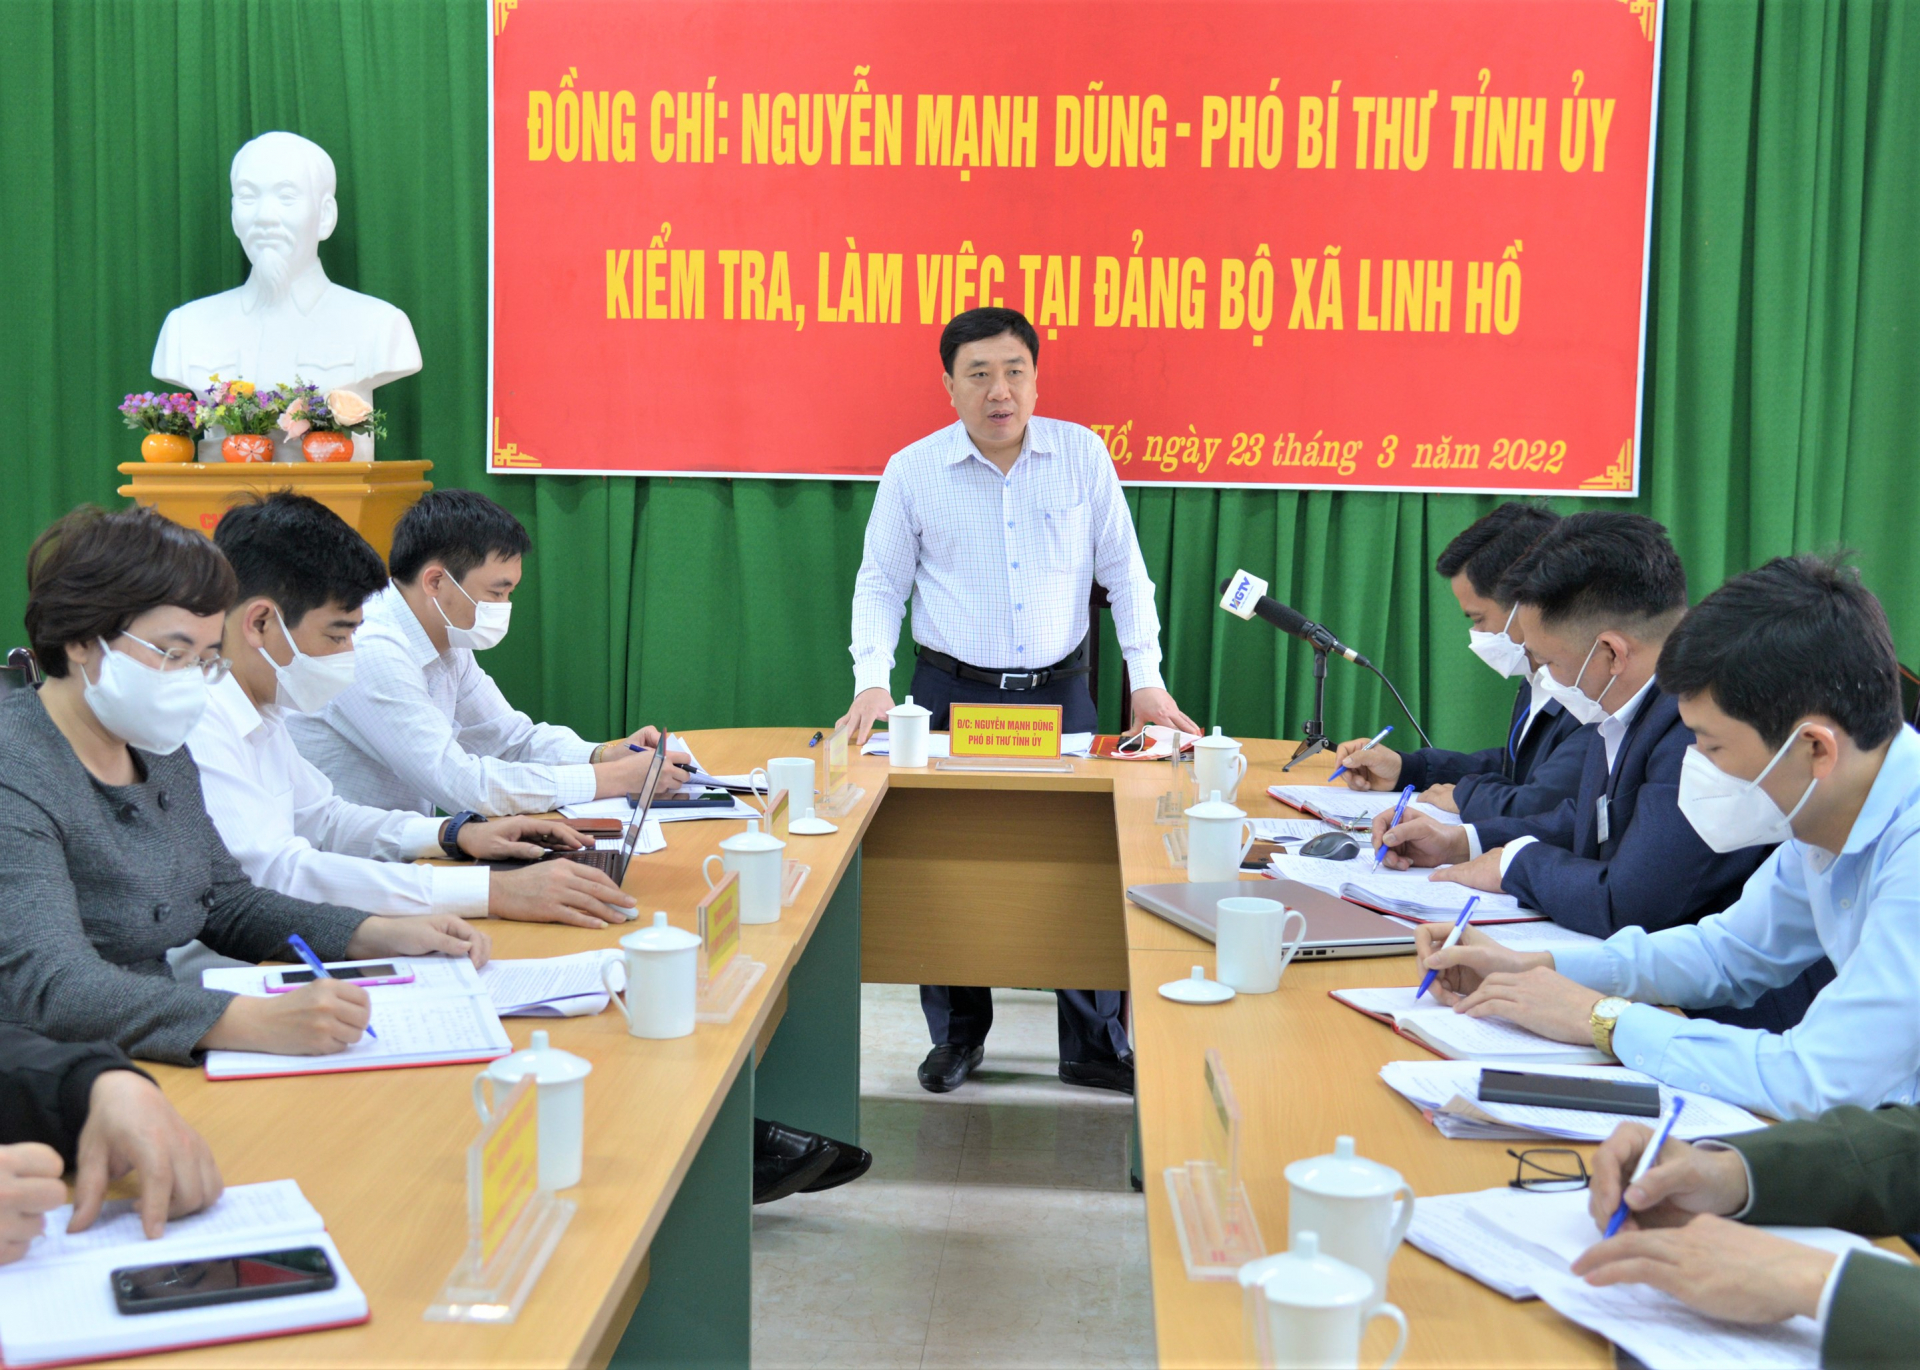 Phó Bí thư Tỉnh ủy Nguyễn Mạnh Dũng phát biểu kết luận tại buổi làm việc với Đảng ủy xã Linh Hồ